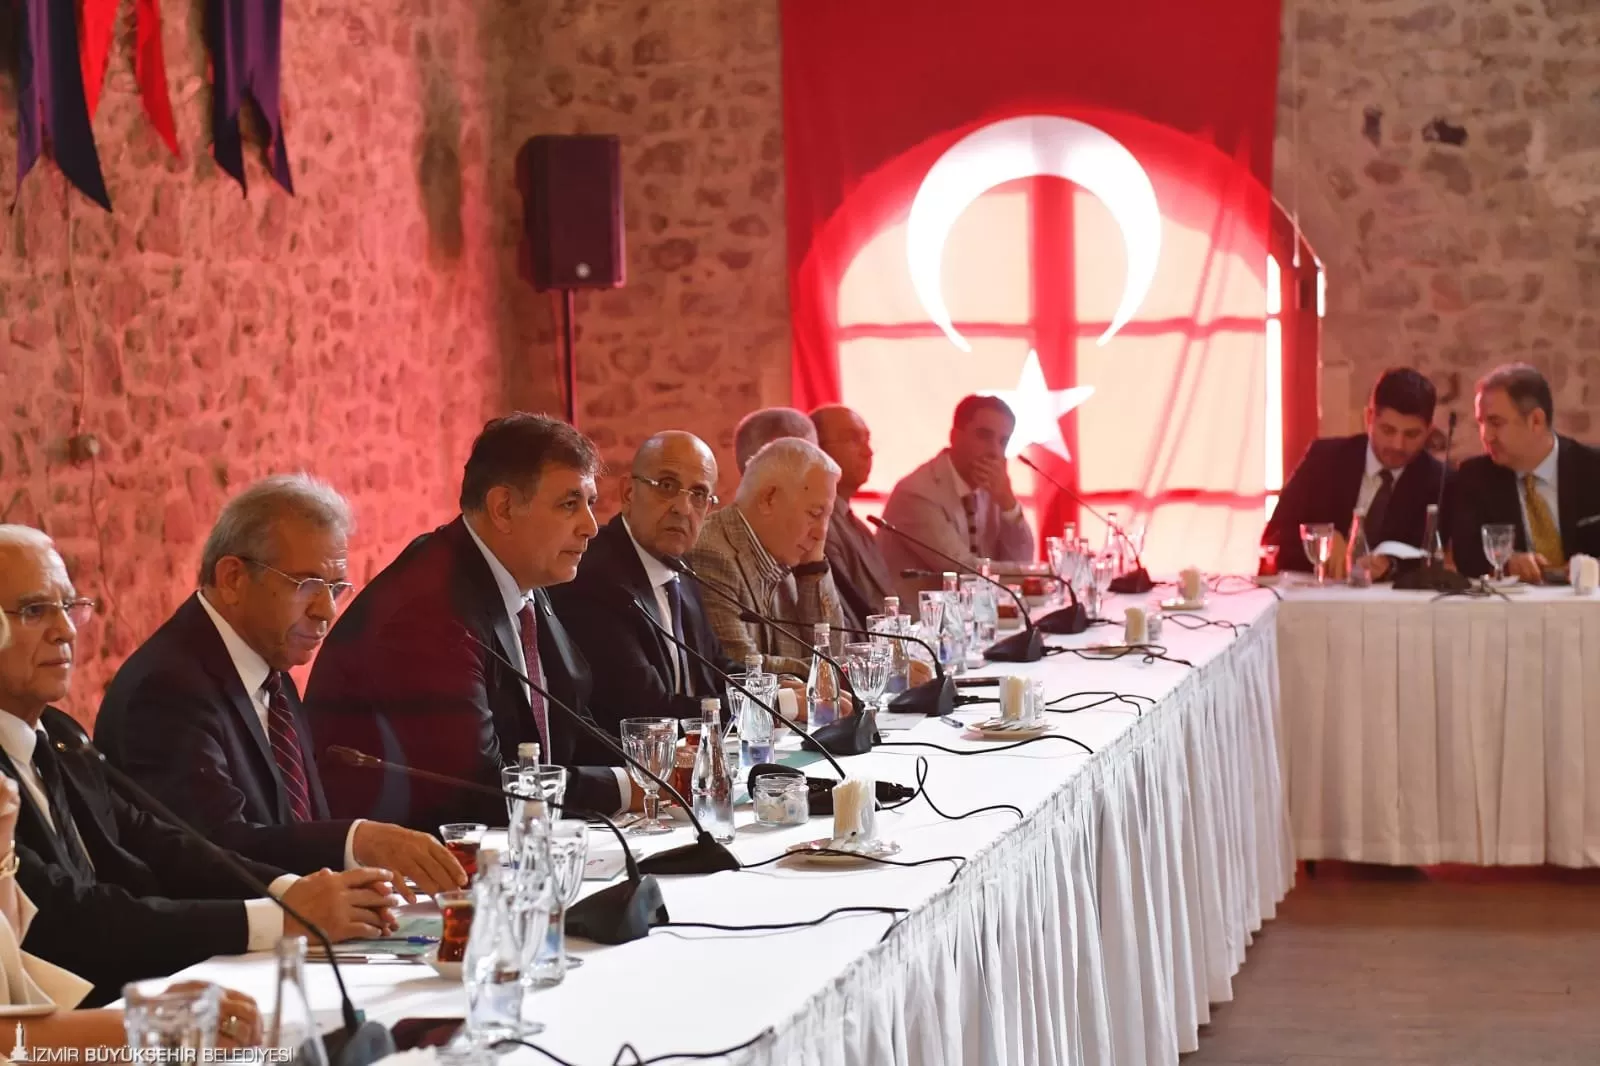 İzmir Büyükşehir Belediye Başkanı Dr. Cemil Tugay, İzmir Ekonomik Kalkınma Koordinasyon Kurulu'nun (İEKKK) 126. toplantısına ev sahipliği yaptı.